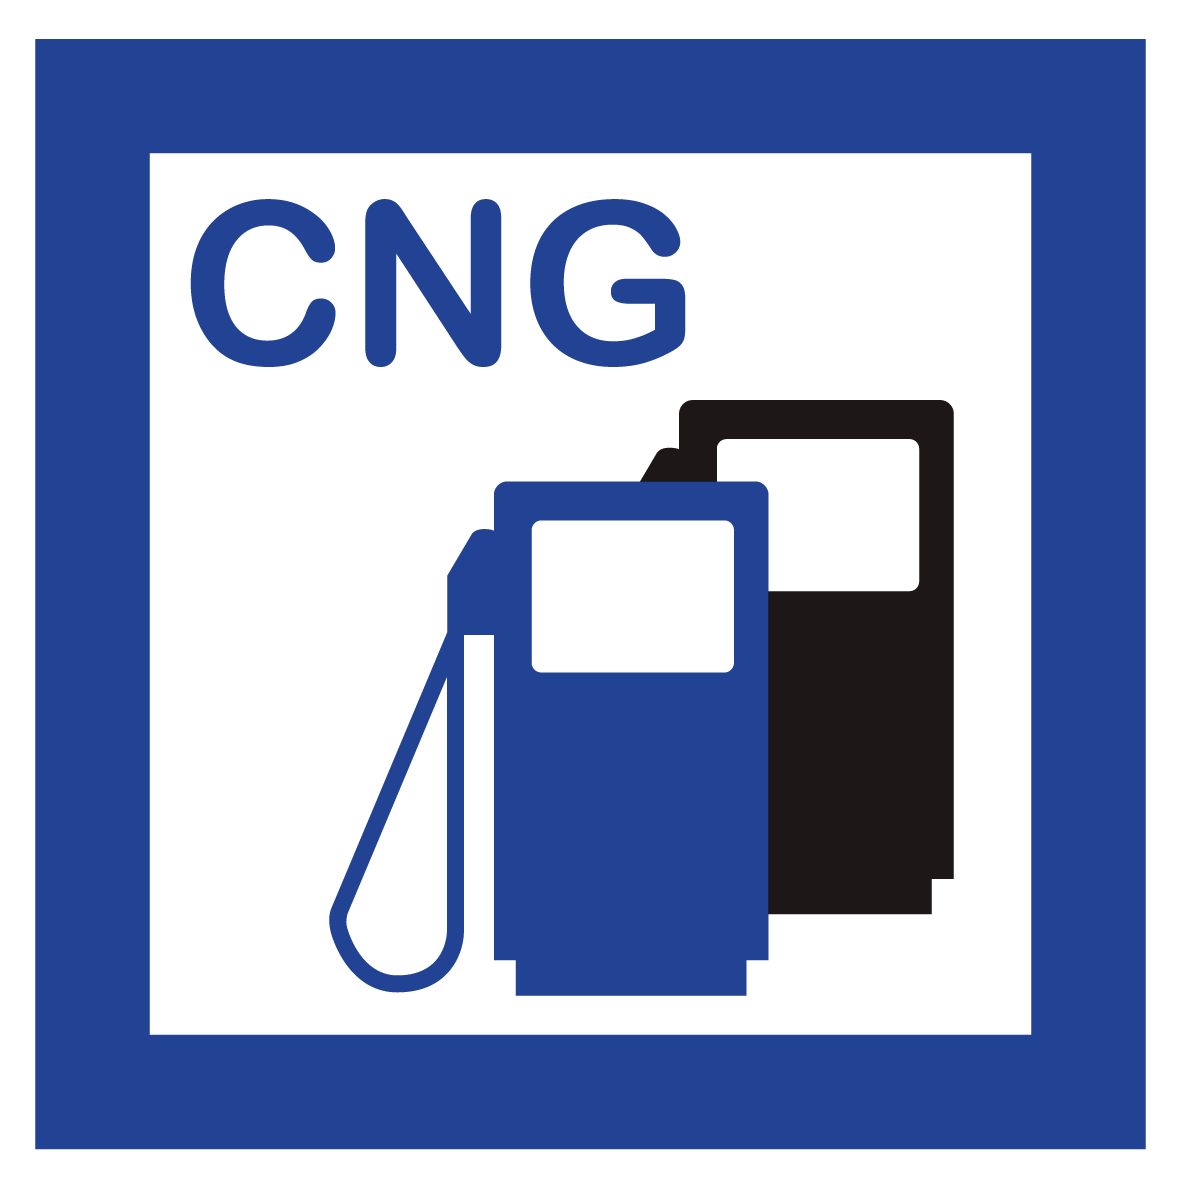 Schild für erneuerbare Energien - CNG Erdgas Tankstelle - Folie Selbstklebend - 5 x 5 cm